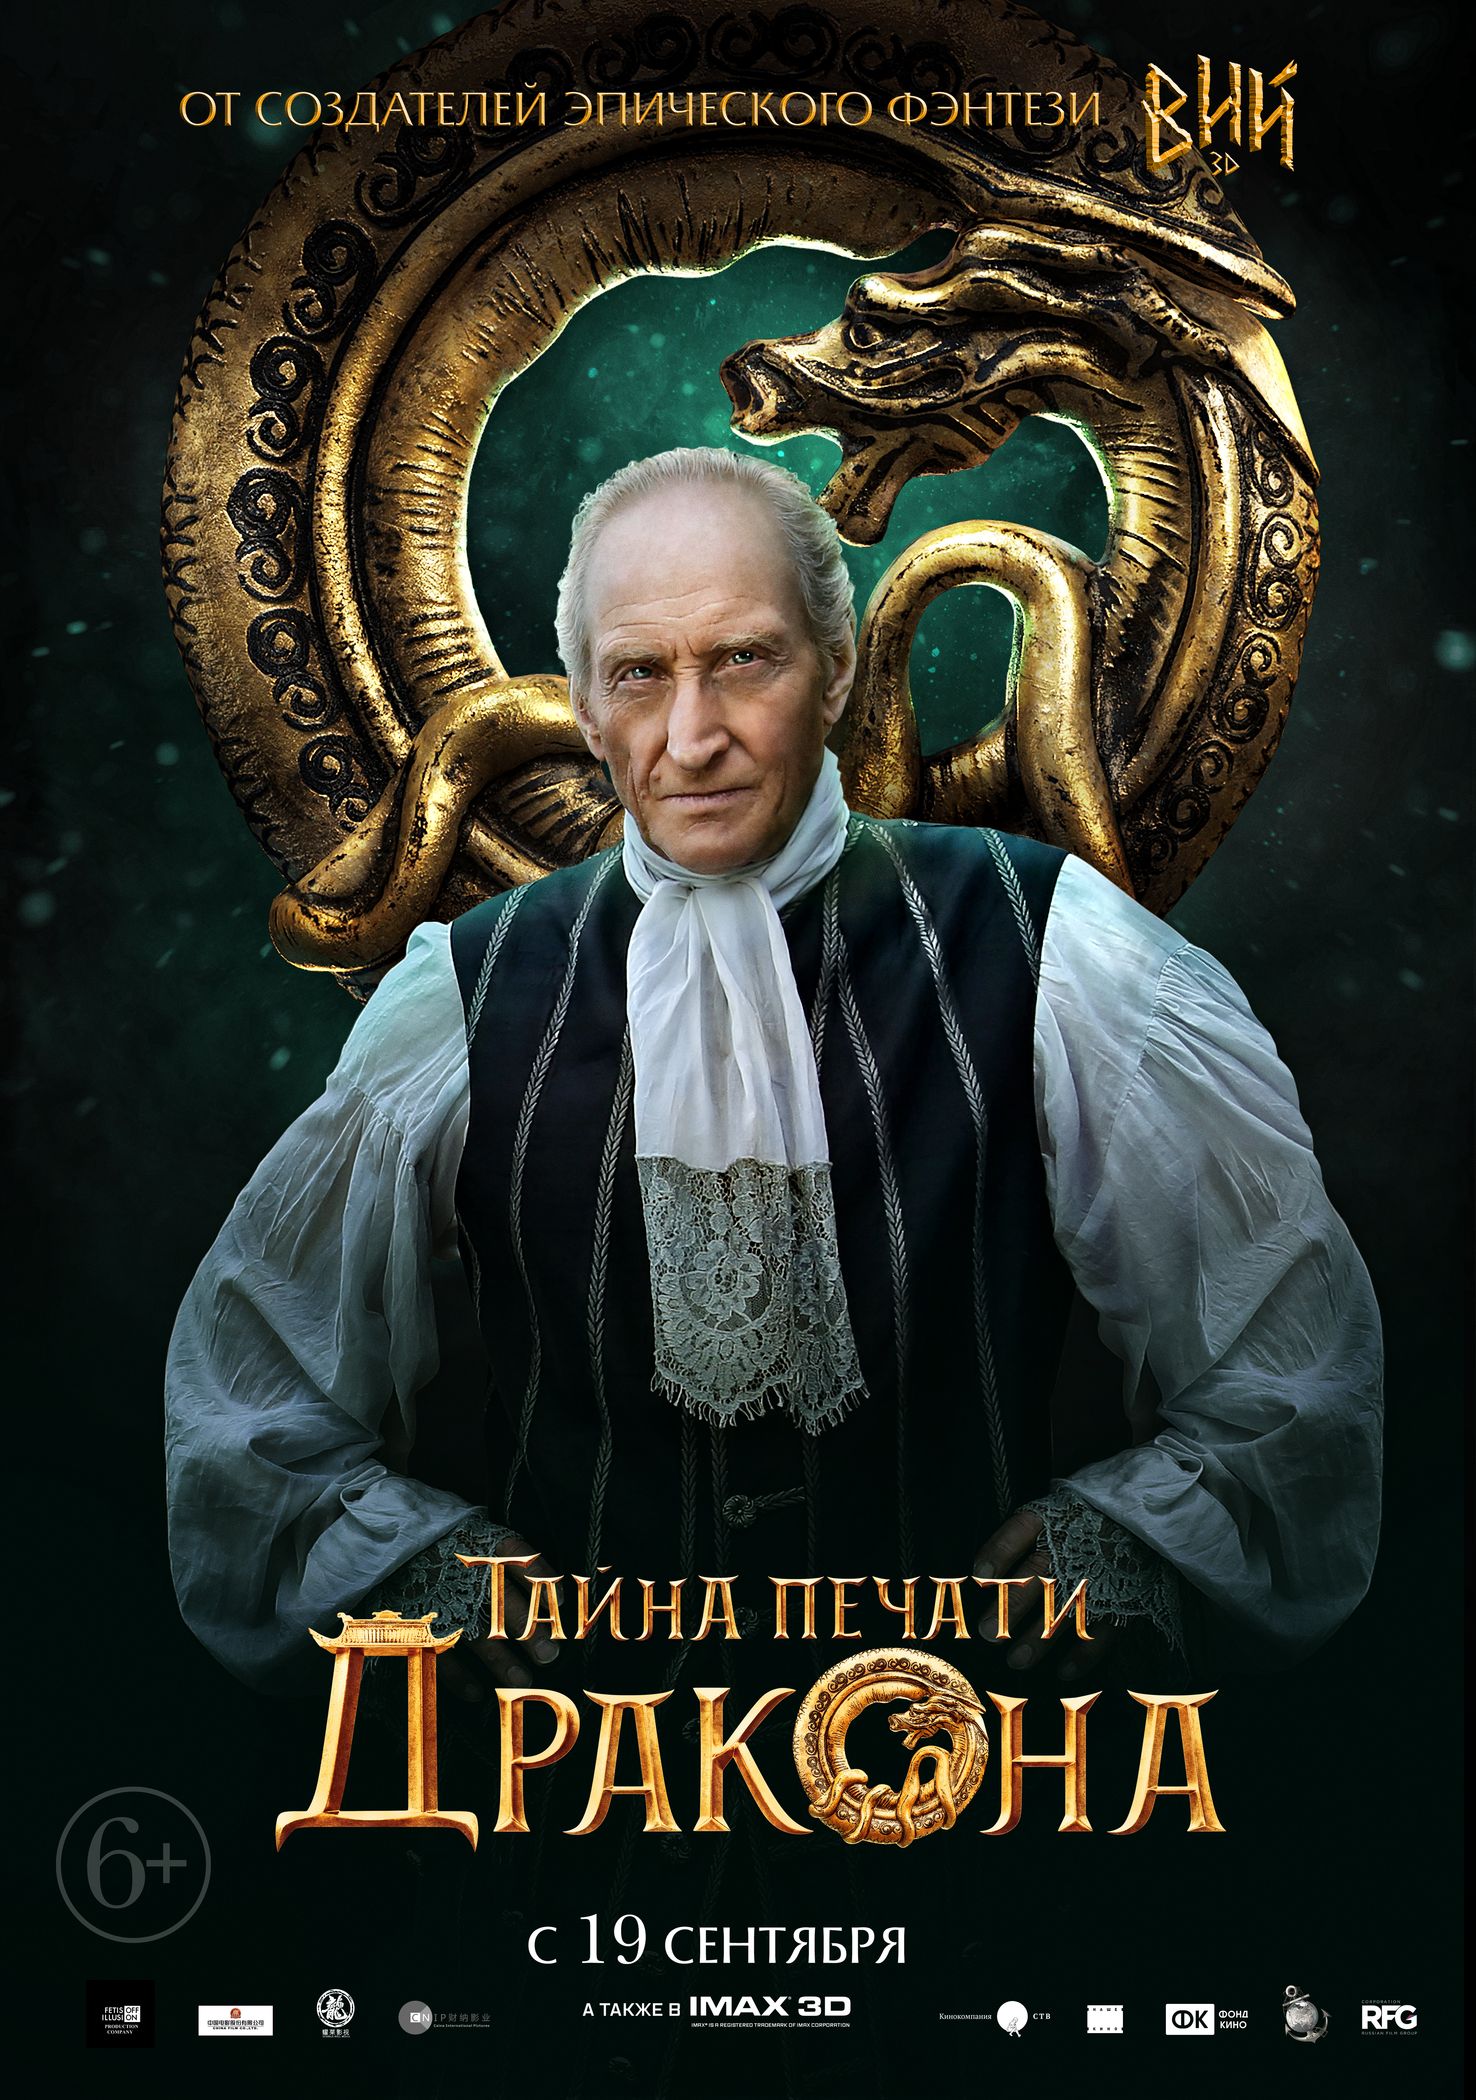 Тайна Печати дракона, постер № 12